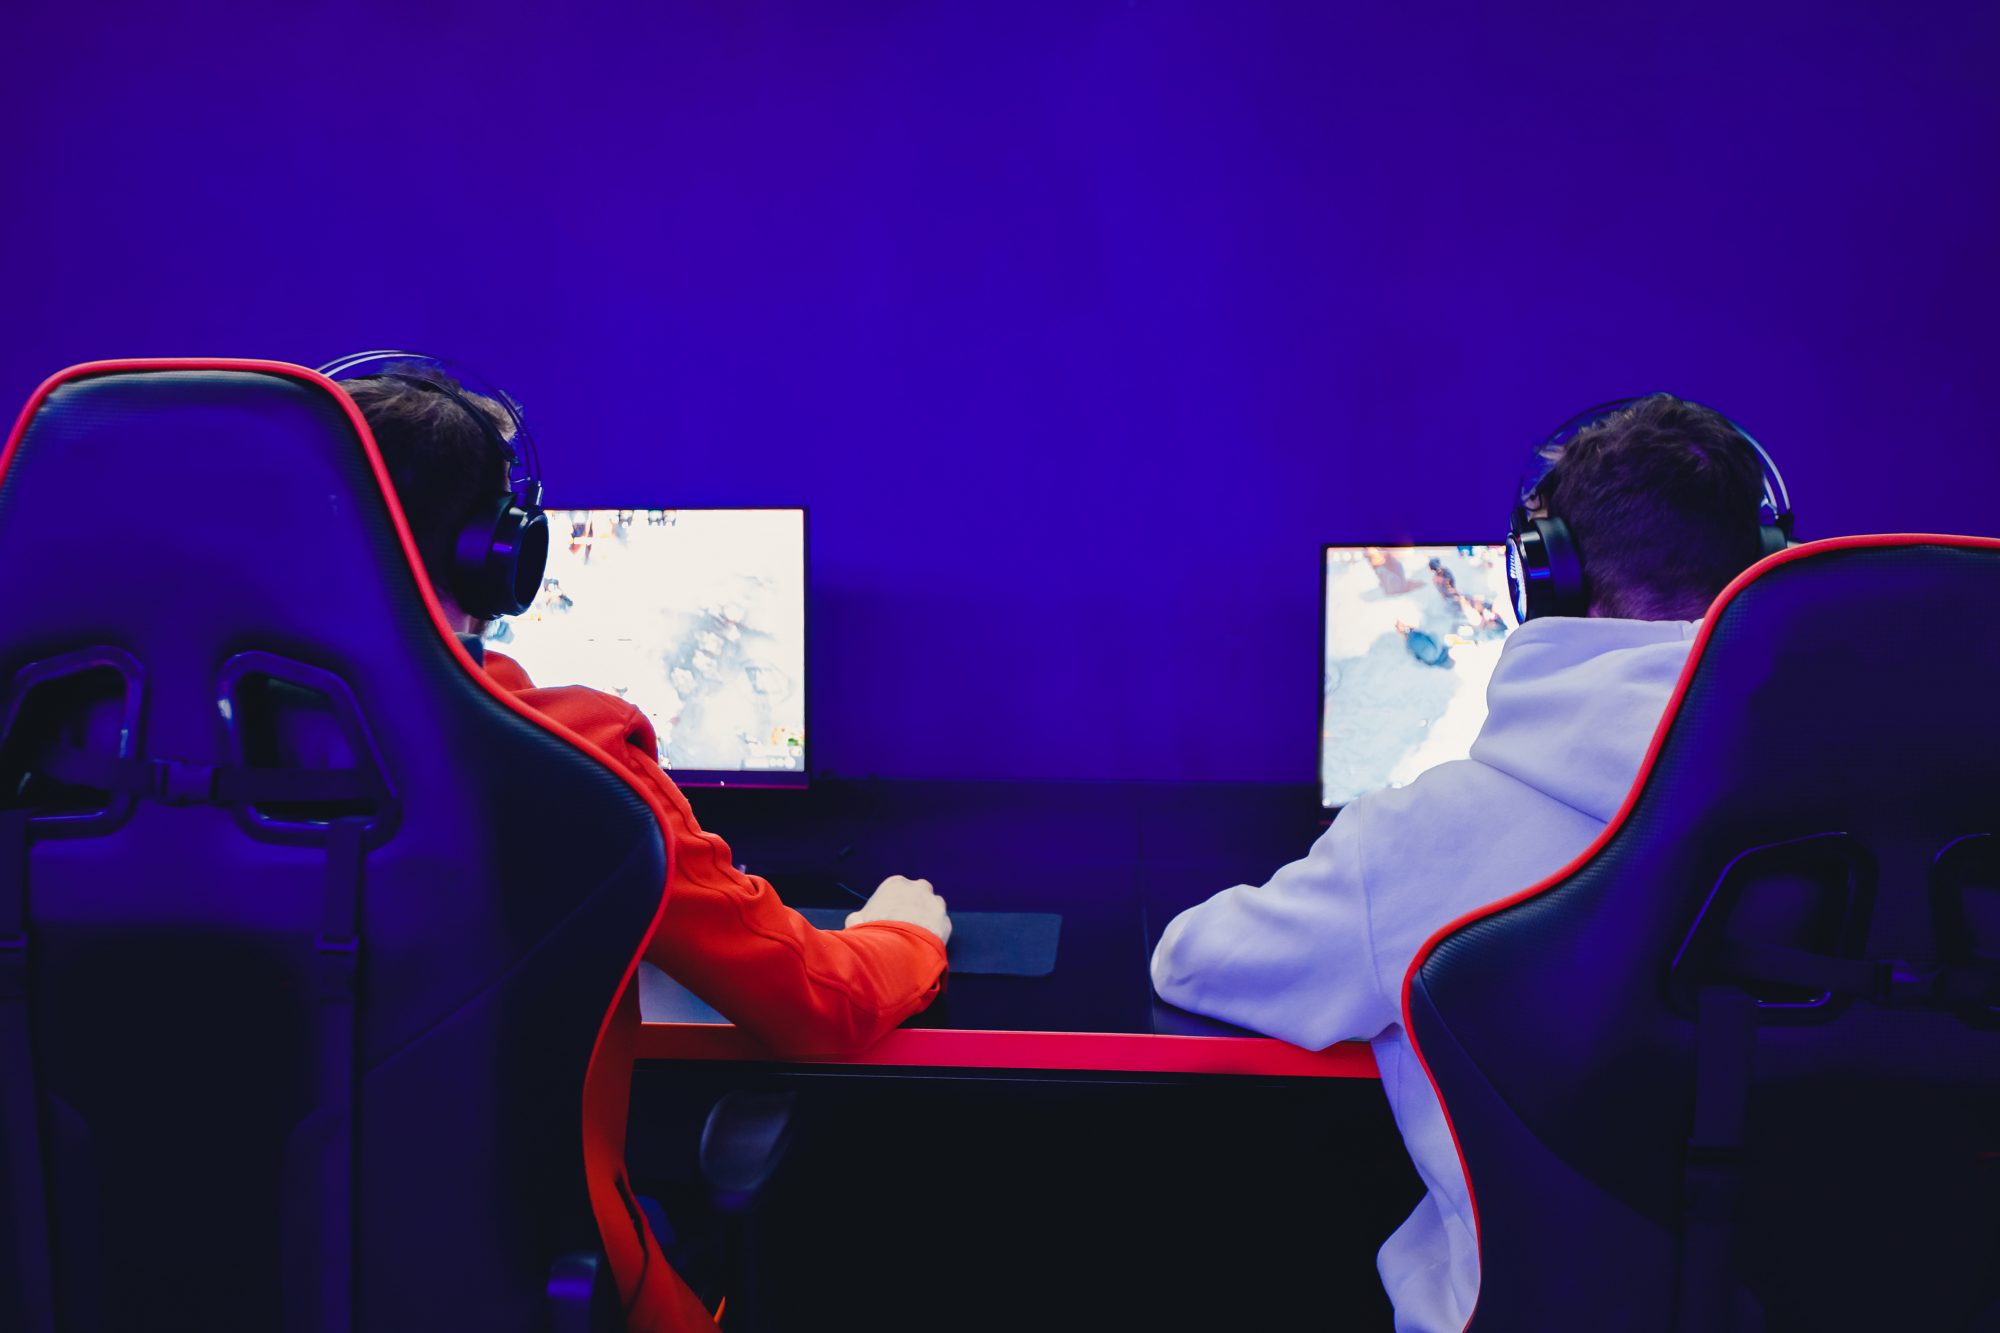 Les jeunes amis jouent à des jeux vidéo en ligne avec des écouteurs dans un café du club Internet.  Concept d'équipe d'esports